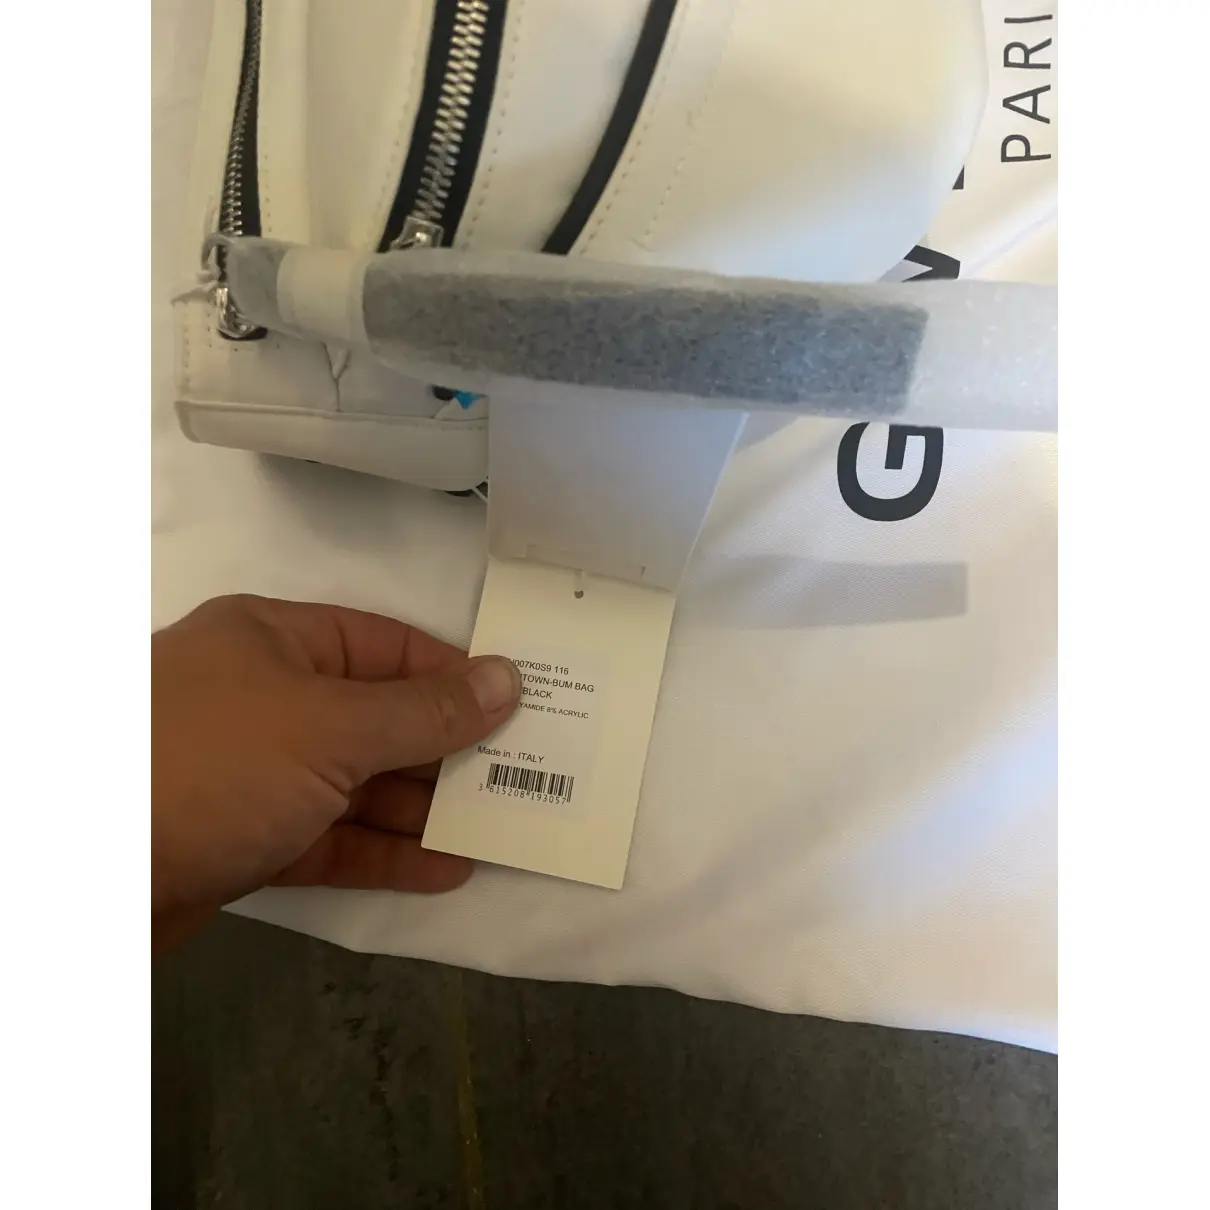 Belt bag Givenchy